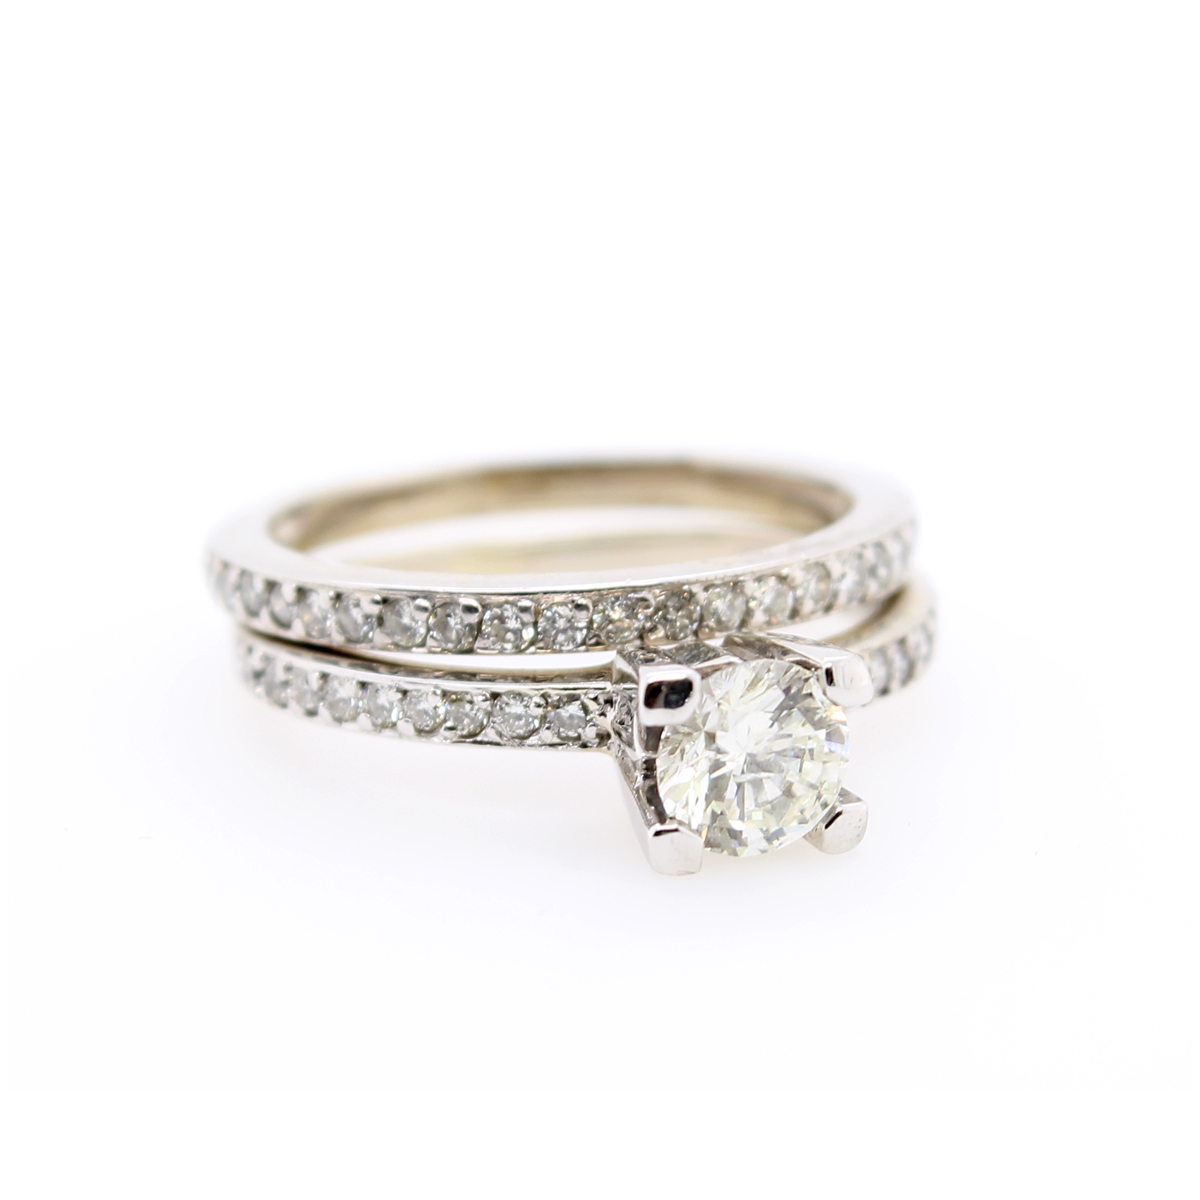 Vintage 14 Karat White Gold Diamond Engagement Ring and Band Set